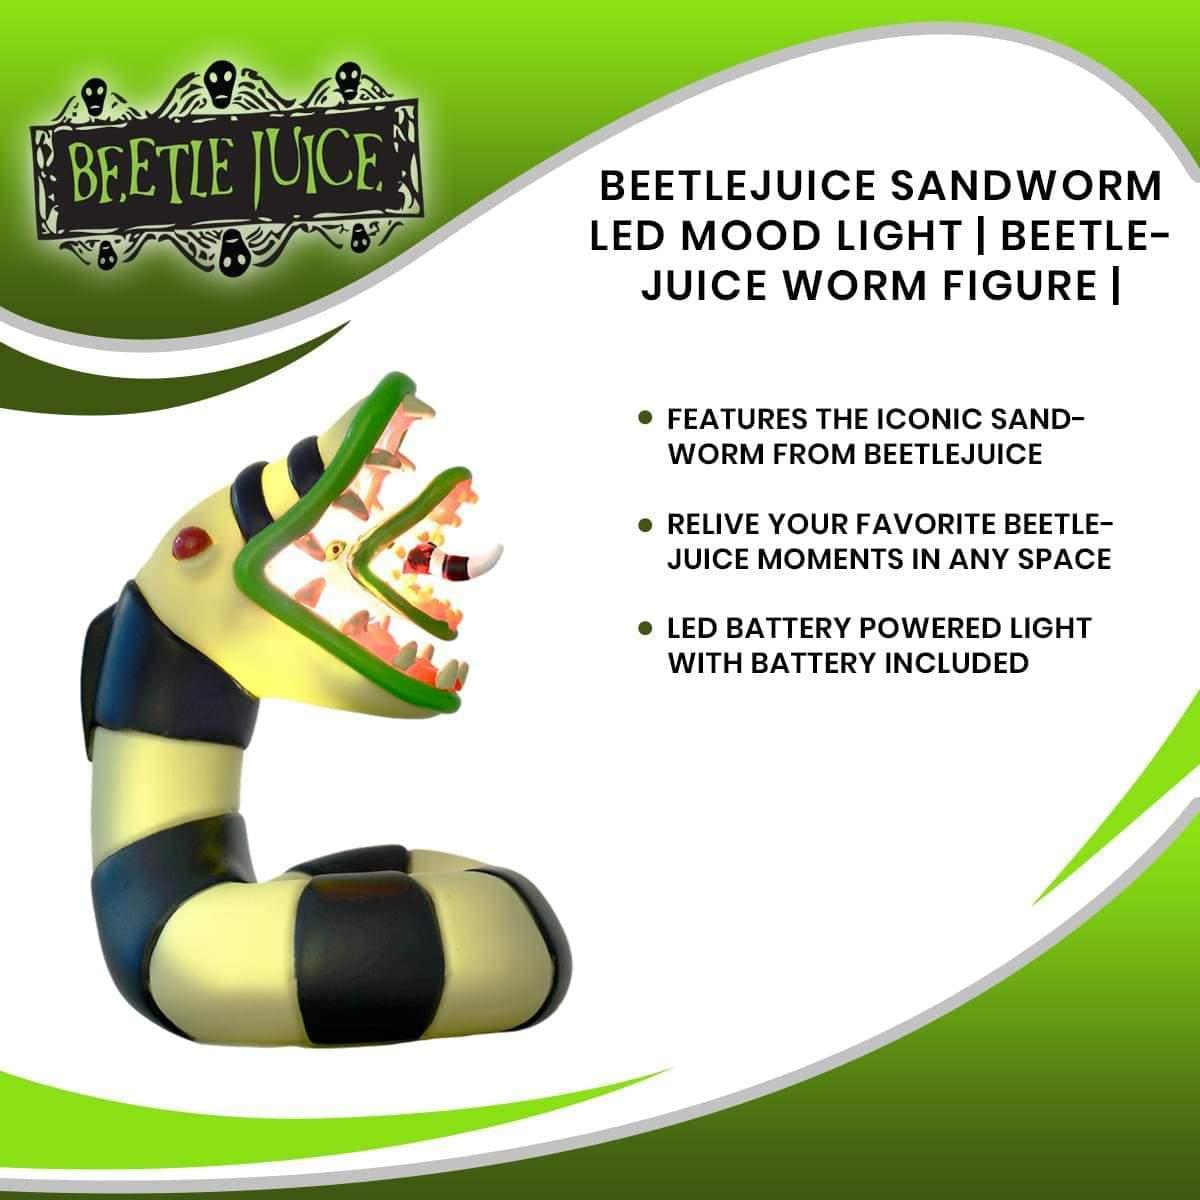 Beetlejuice Sandworm LED Mood Light | Beetlejuice Worm Figure | 4.75 Inches Tall